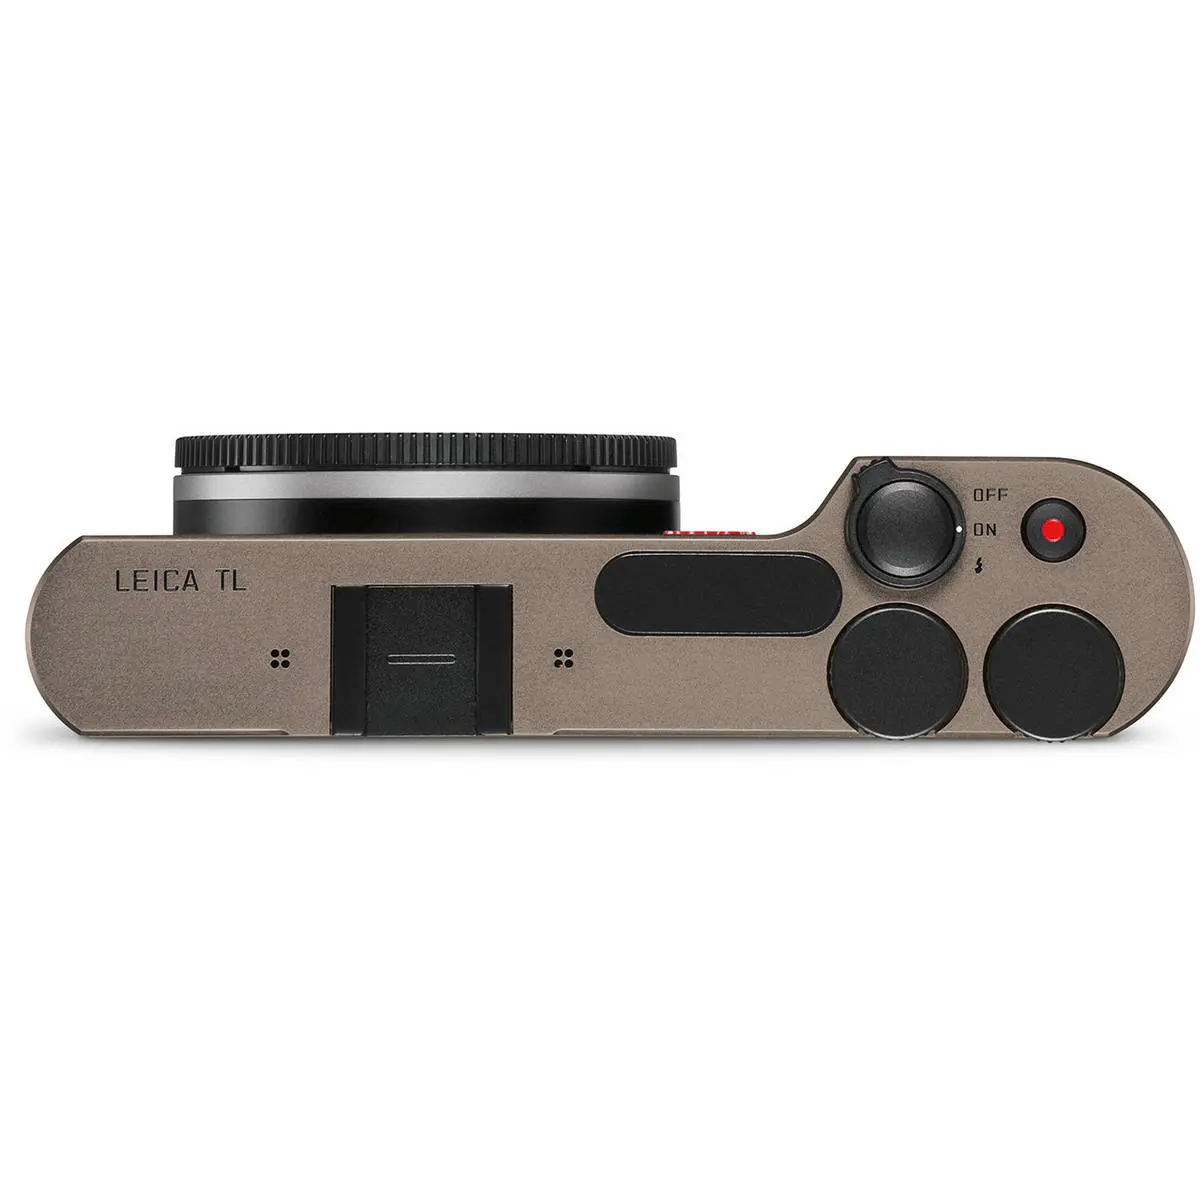 6. Leica TL Body 18112 (Titanium) Camera